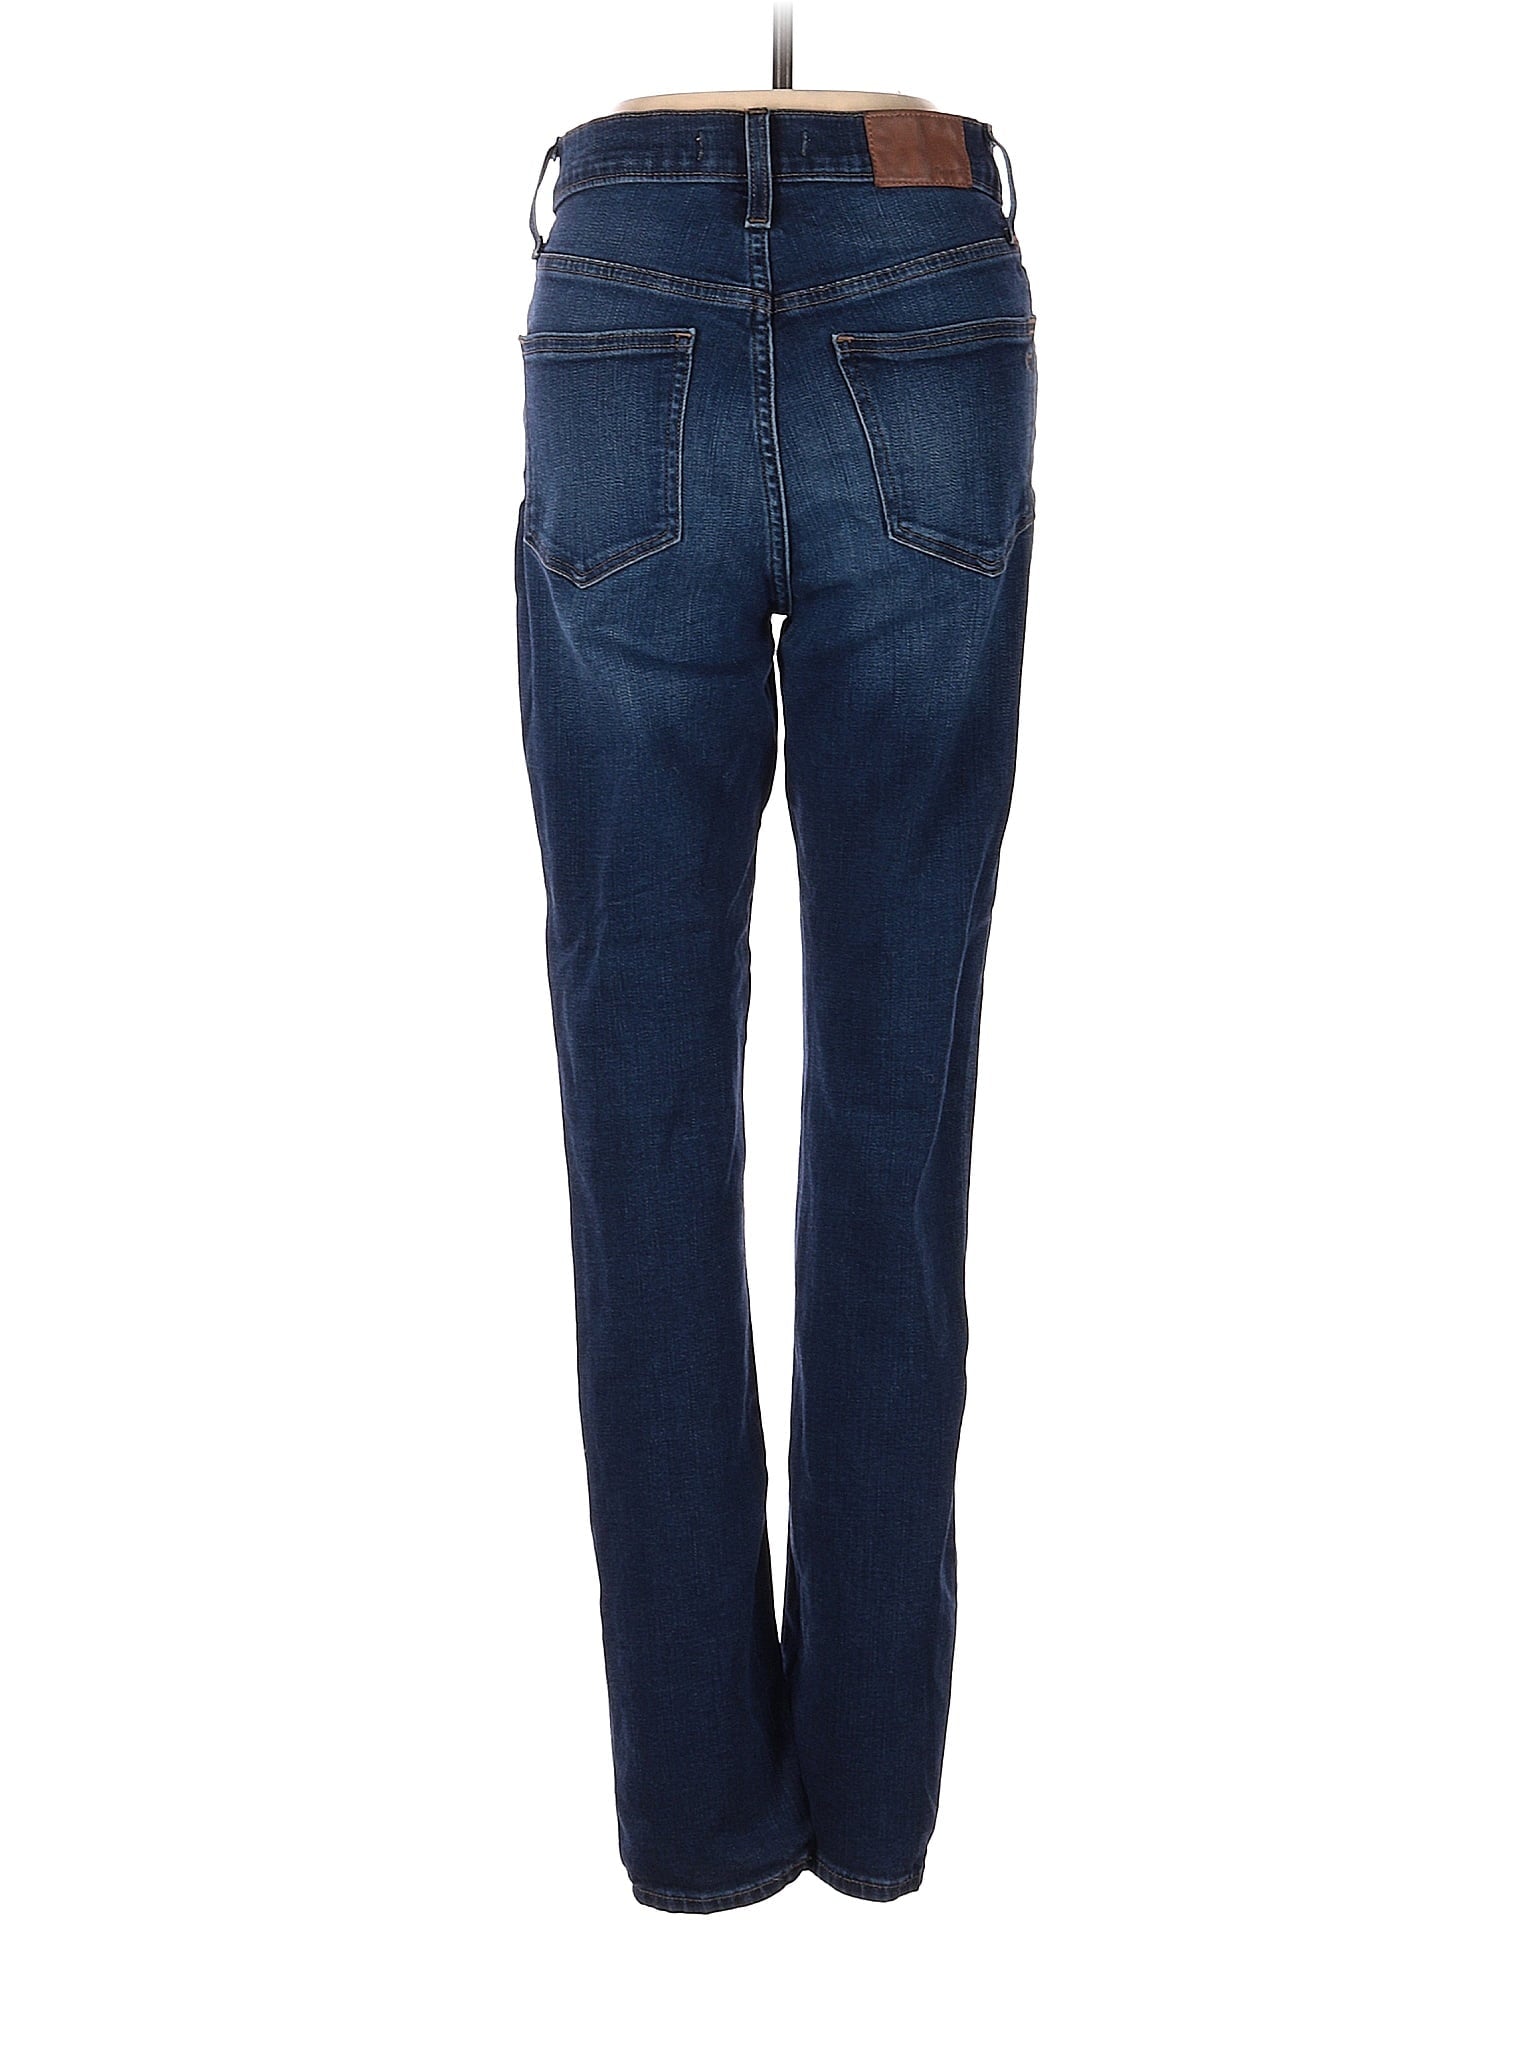 High-Rise Straight-leg Jeans in Dark Wash waist size - 25